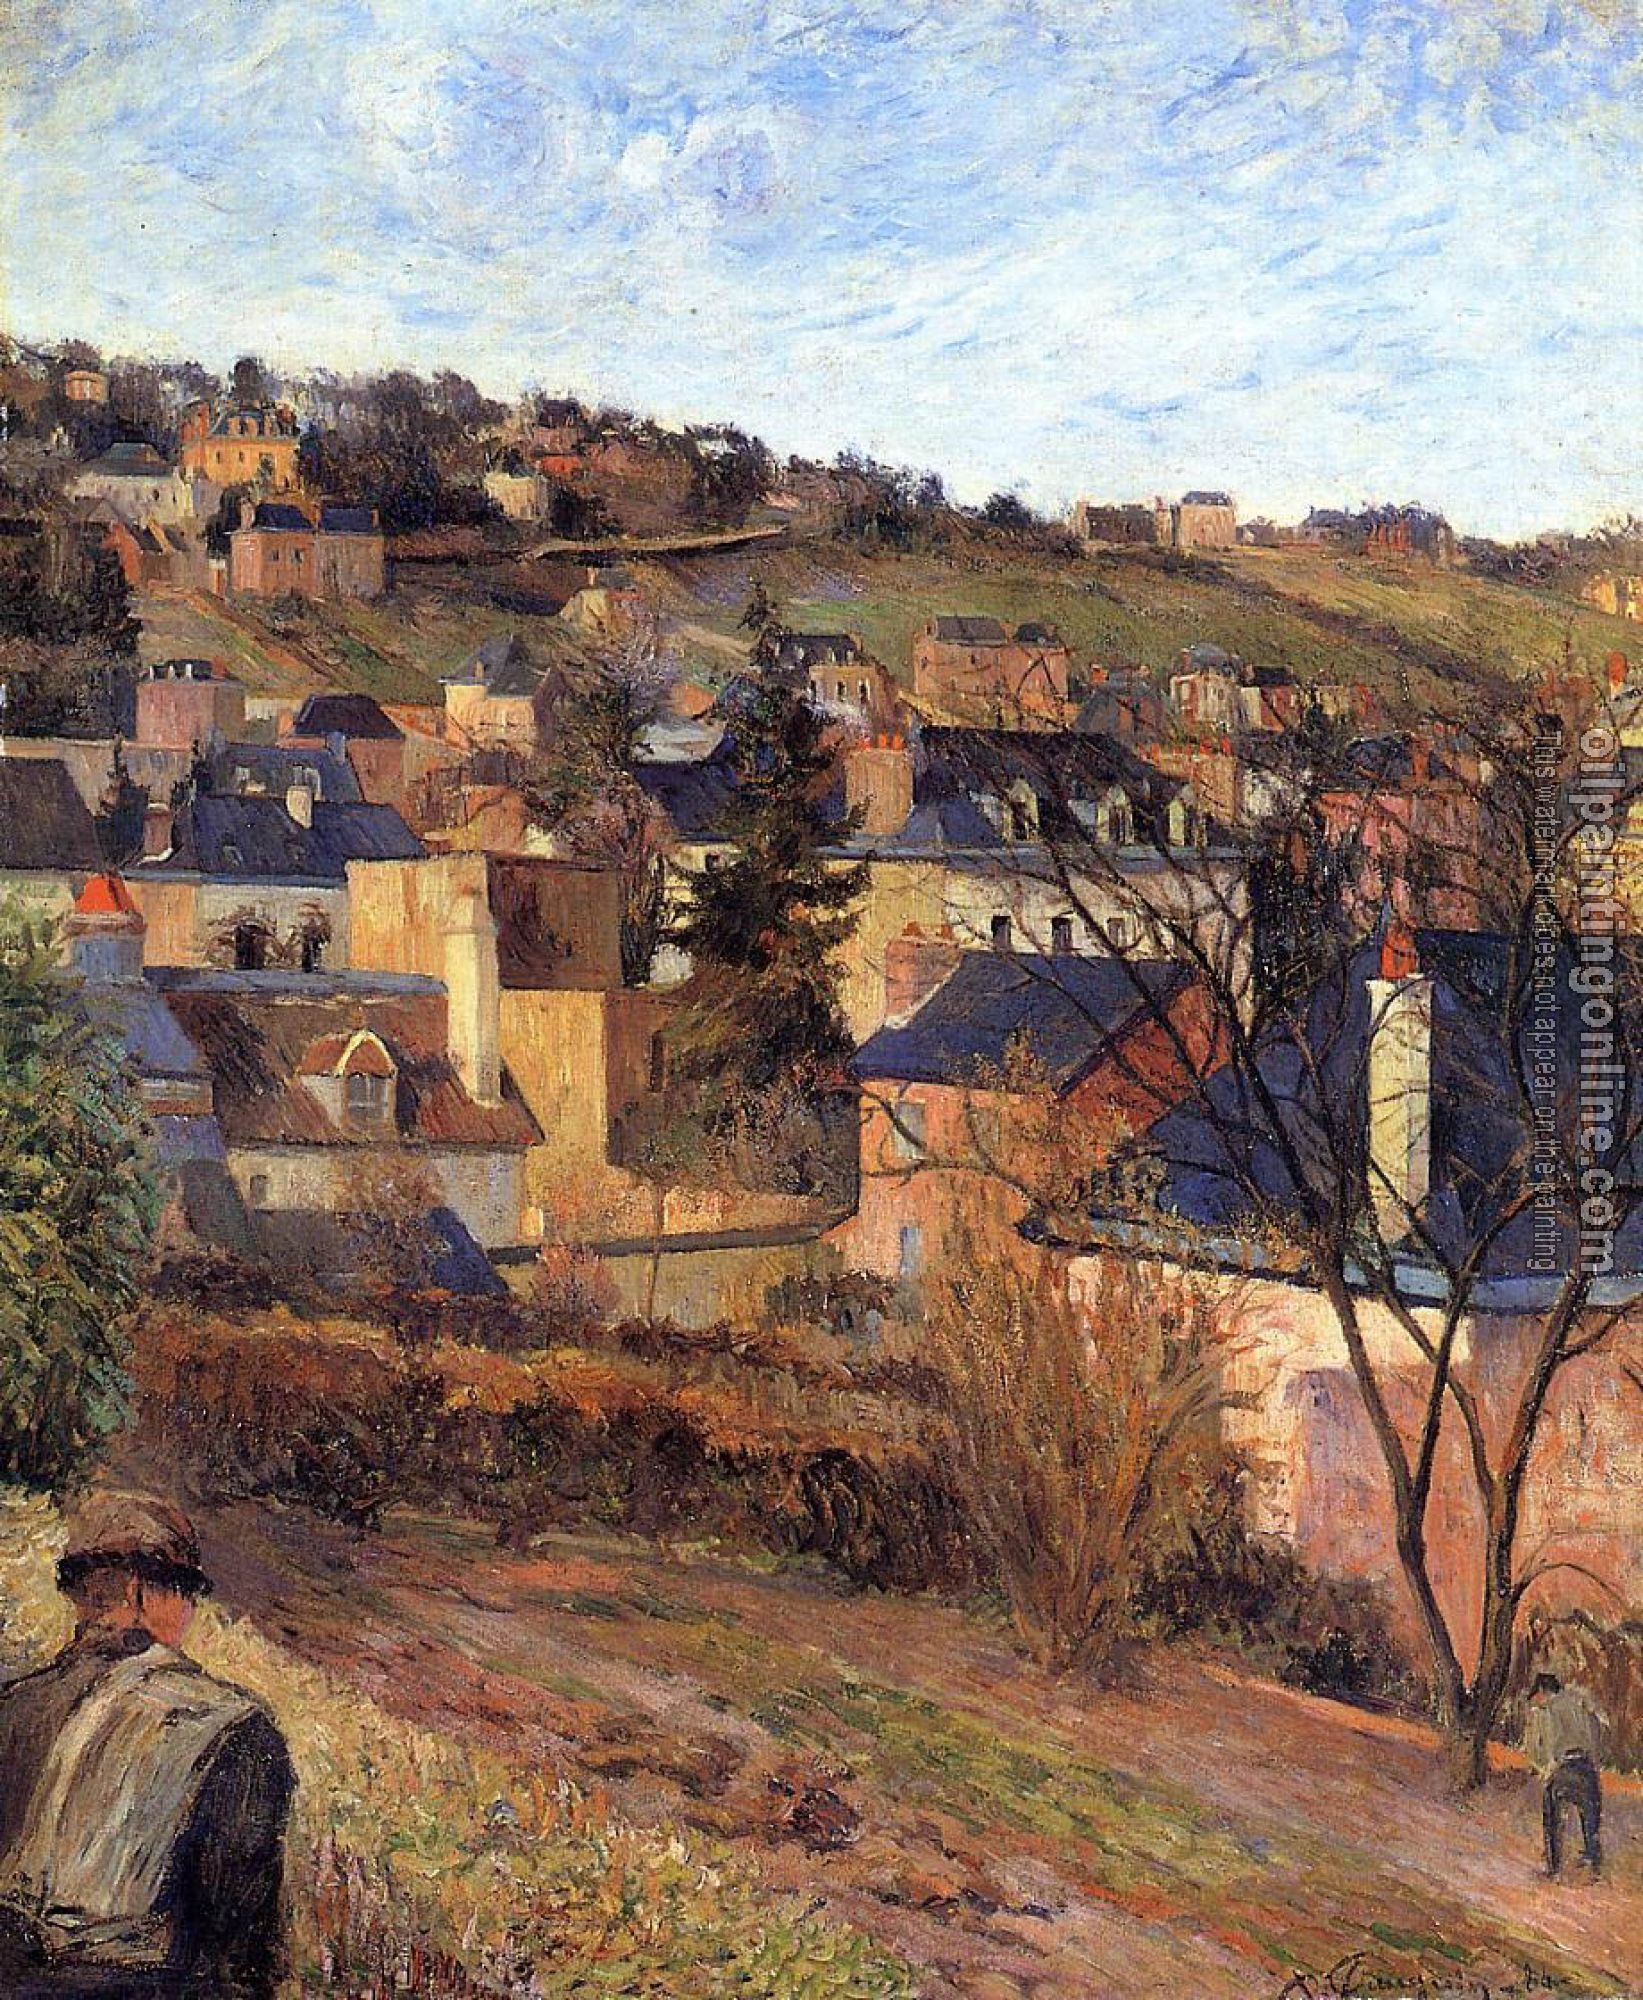 Gauguin, Paul - Blue Roofs, Rouen